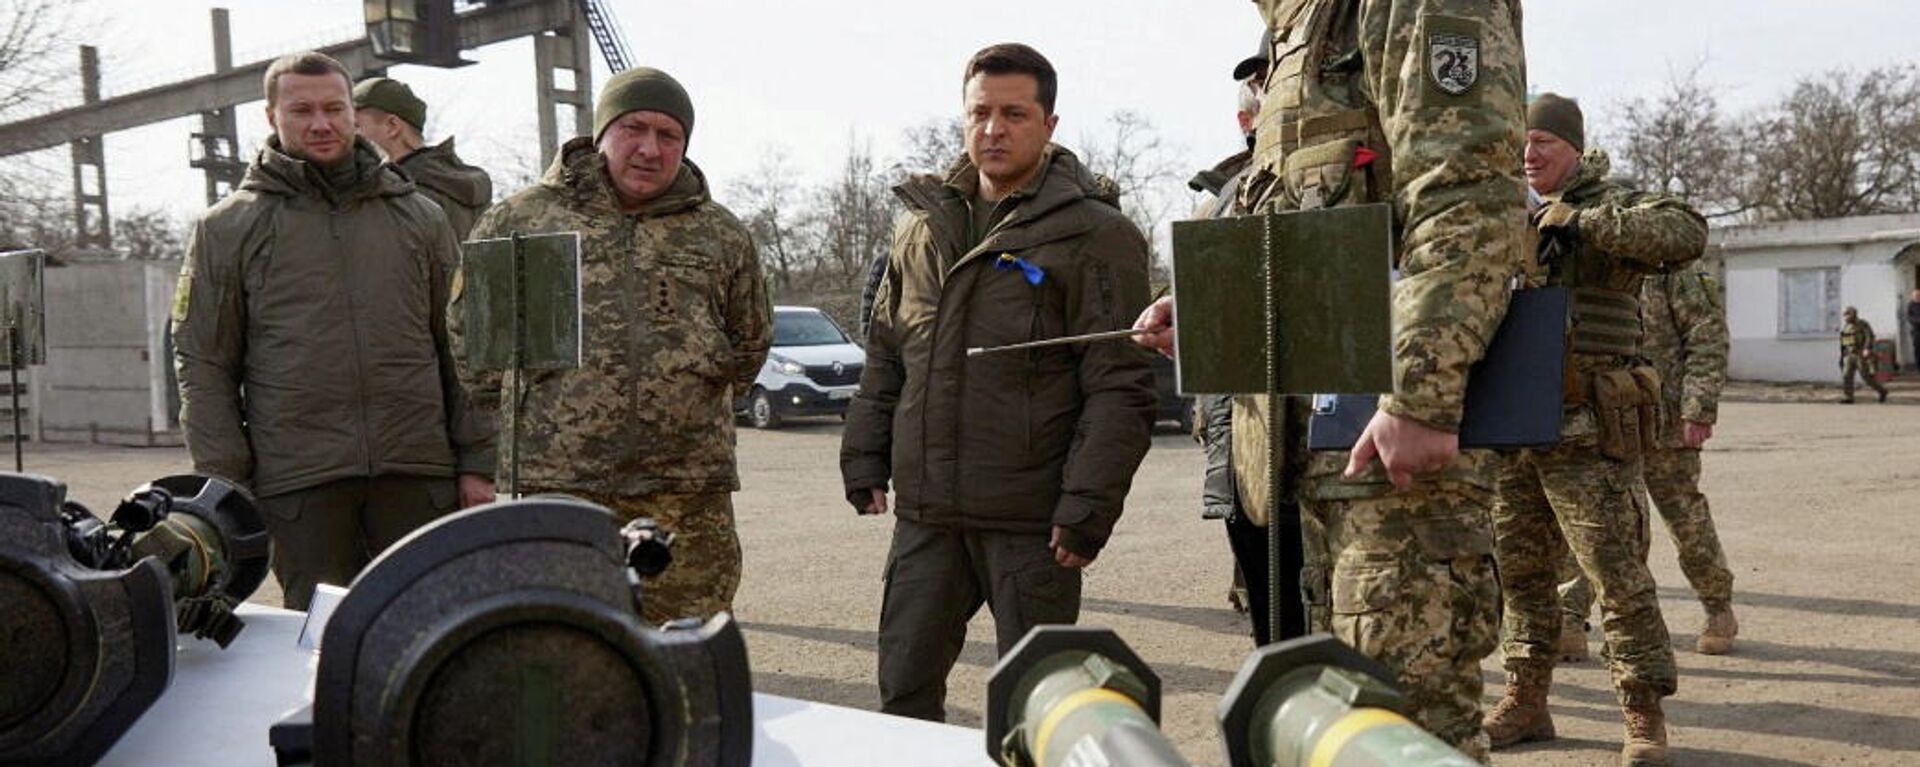 O presidente ucraniano Vladimir Zelensky inspeciona armas enquanto se reúne com membros das forças armadas do país na região de Donetsk, Ucrânia, em 17 de fevereiro de 2022 - Sputnik Brasil, 1920, 21.02.2022